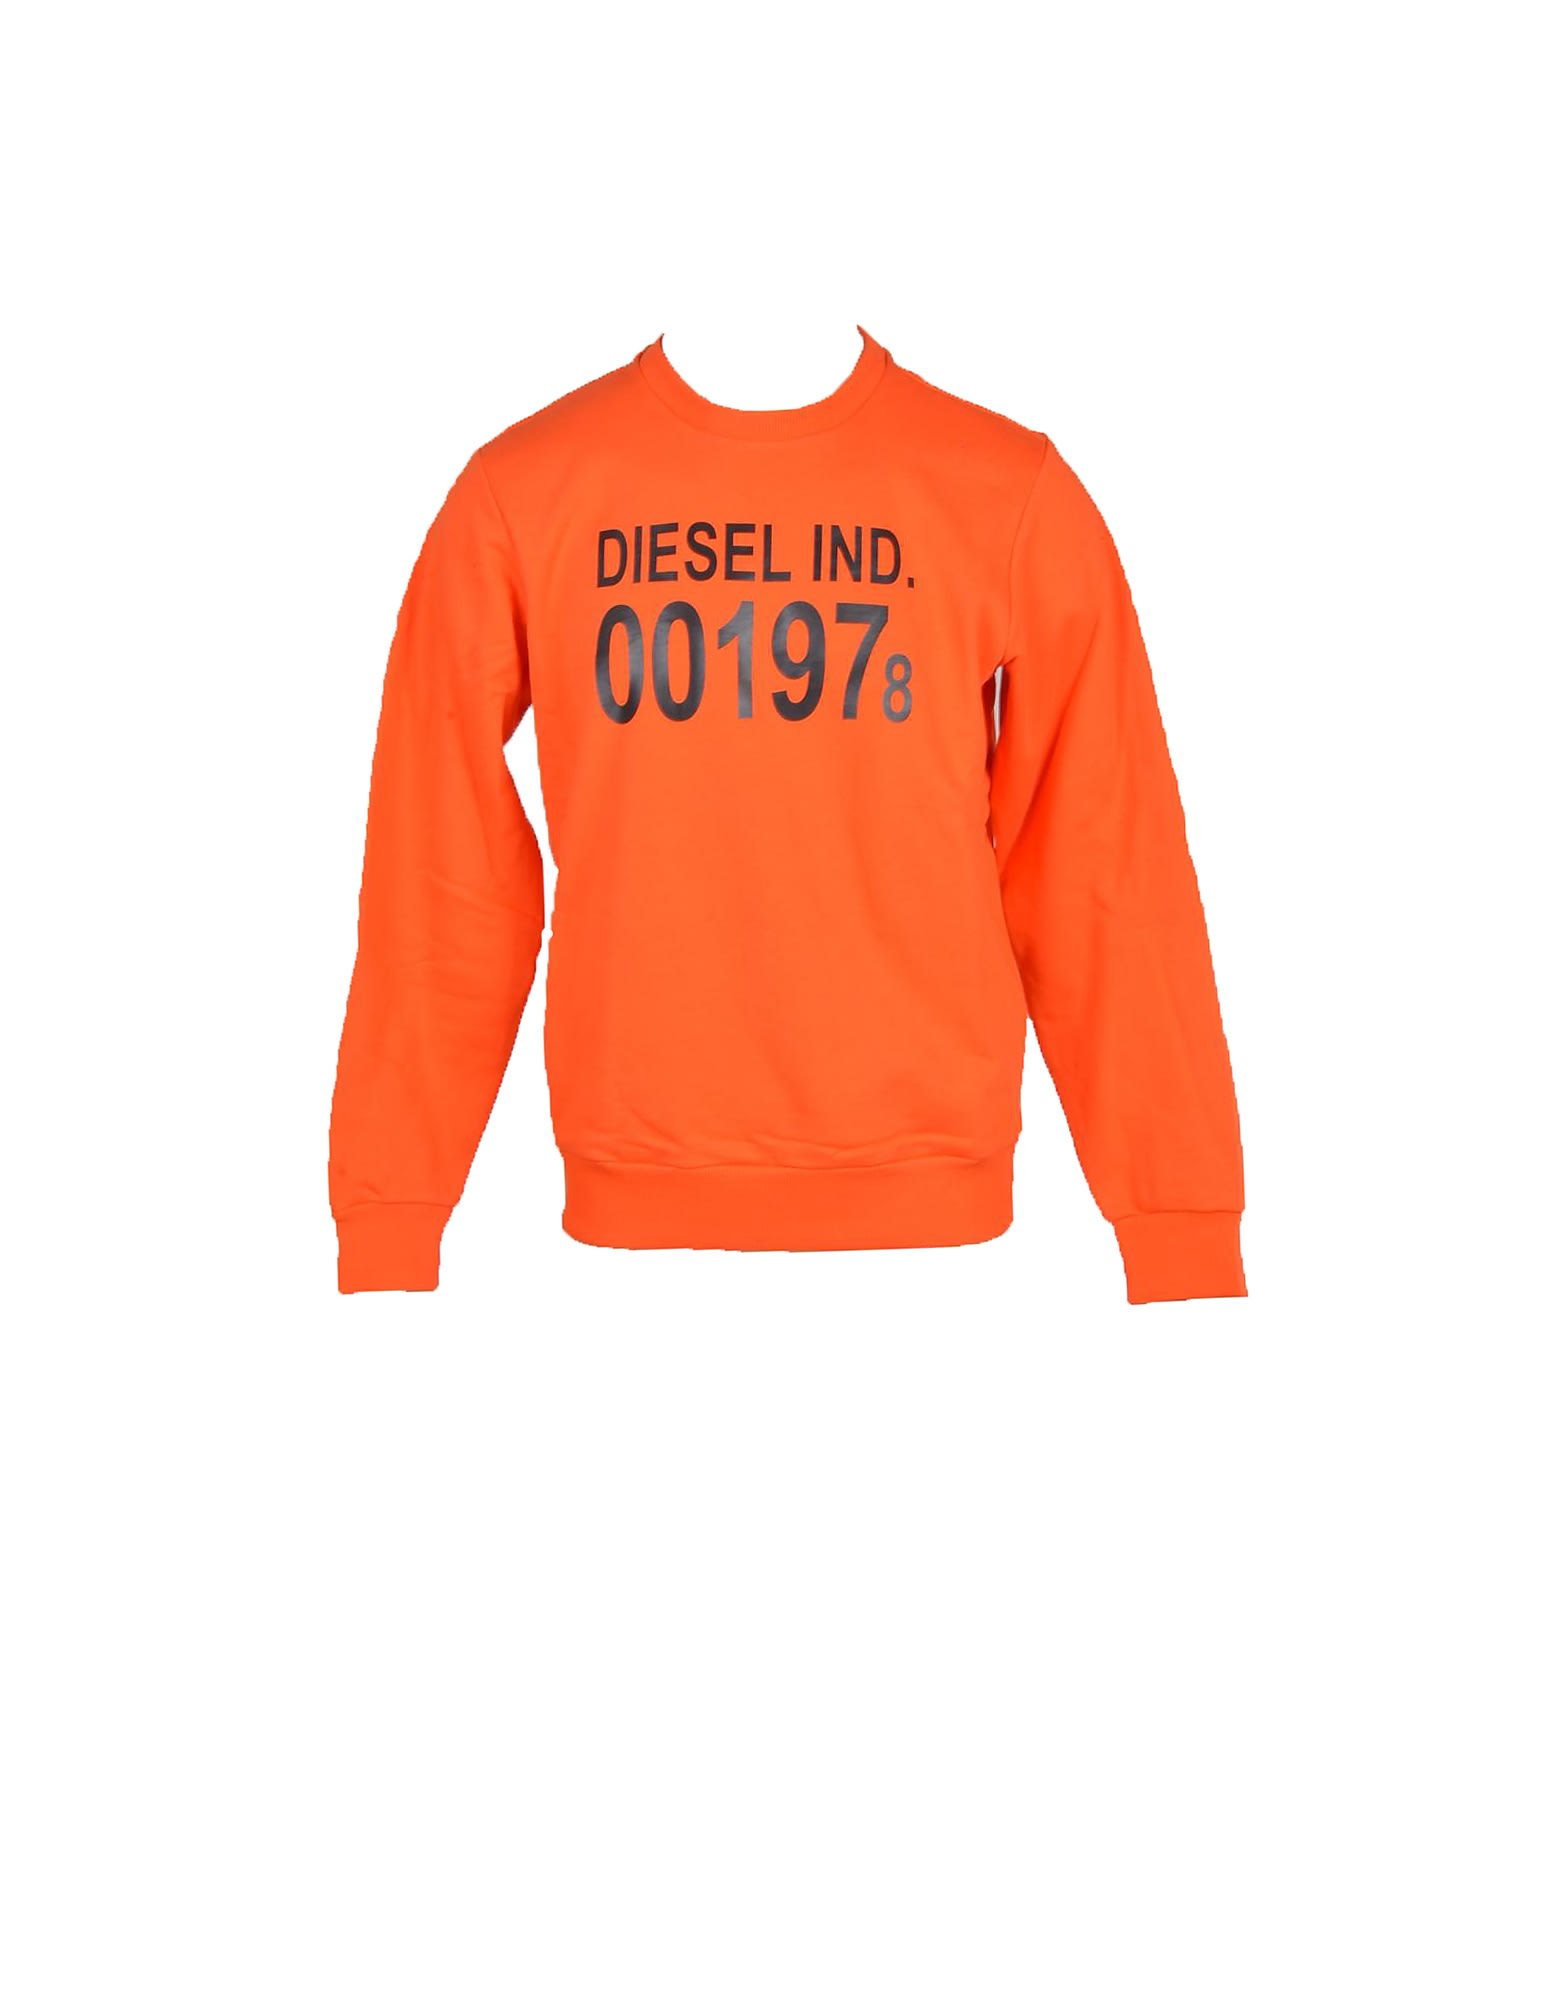 Diesel Mens Orange Sweatshirt